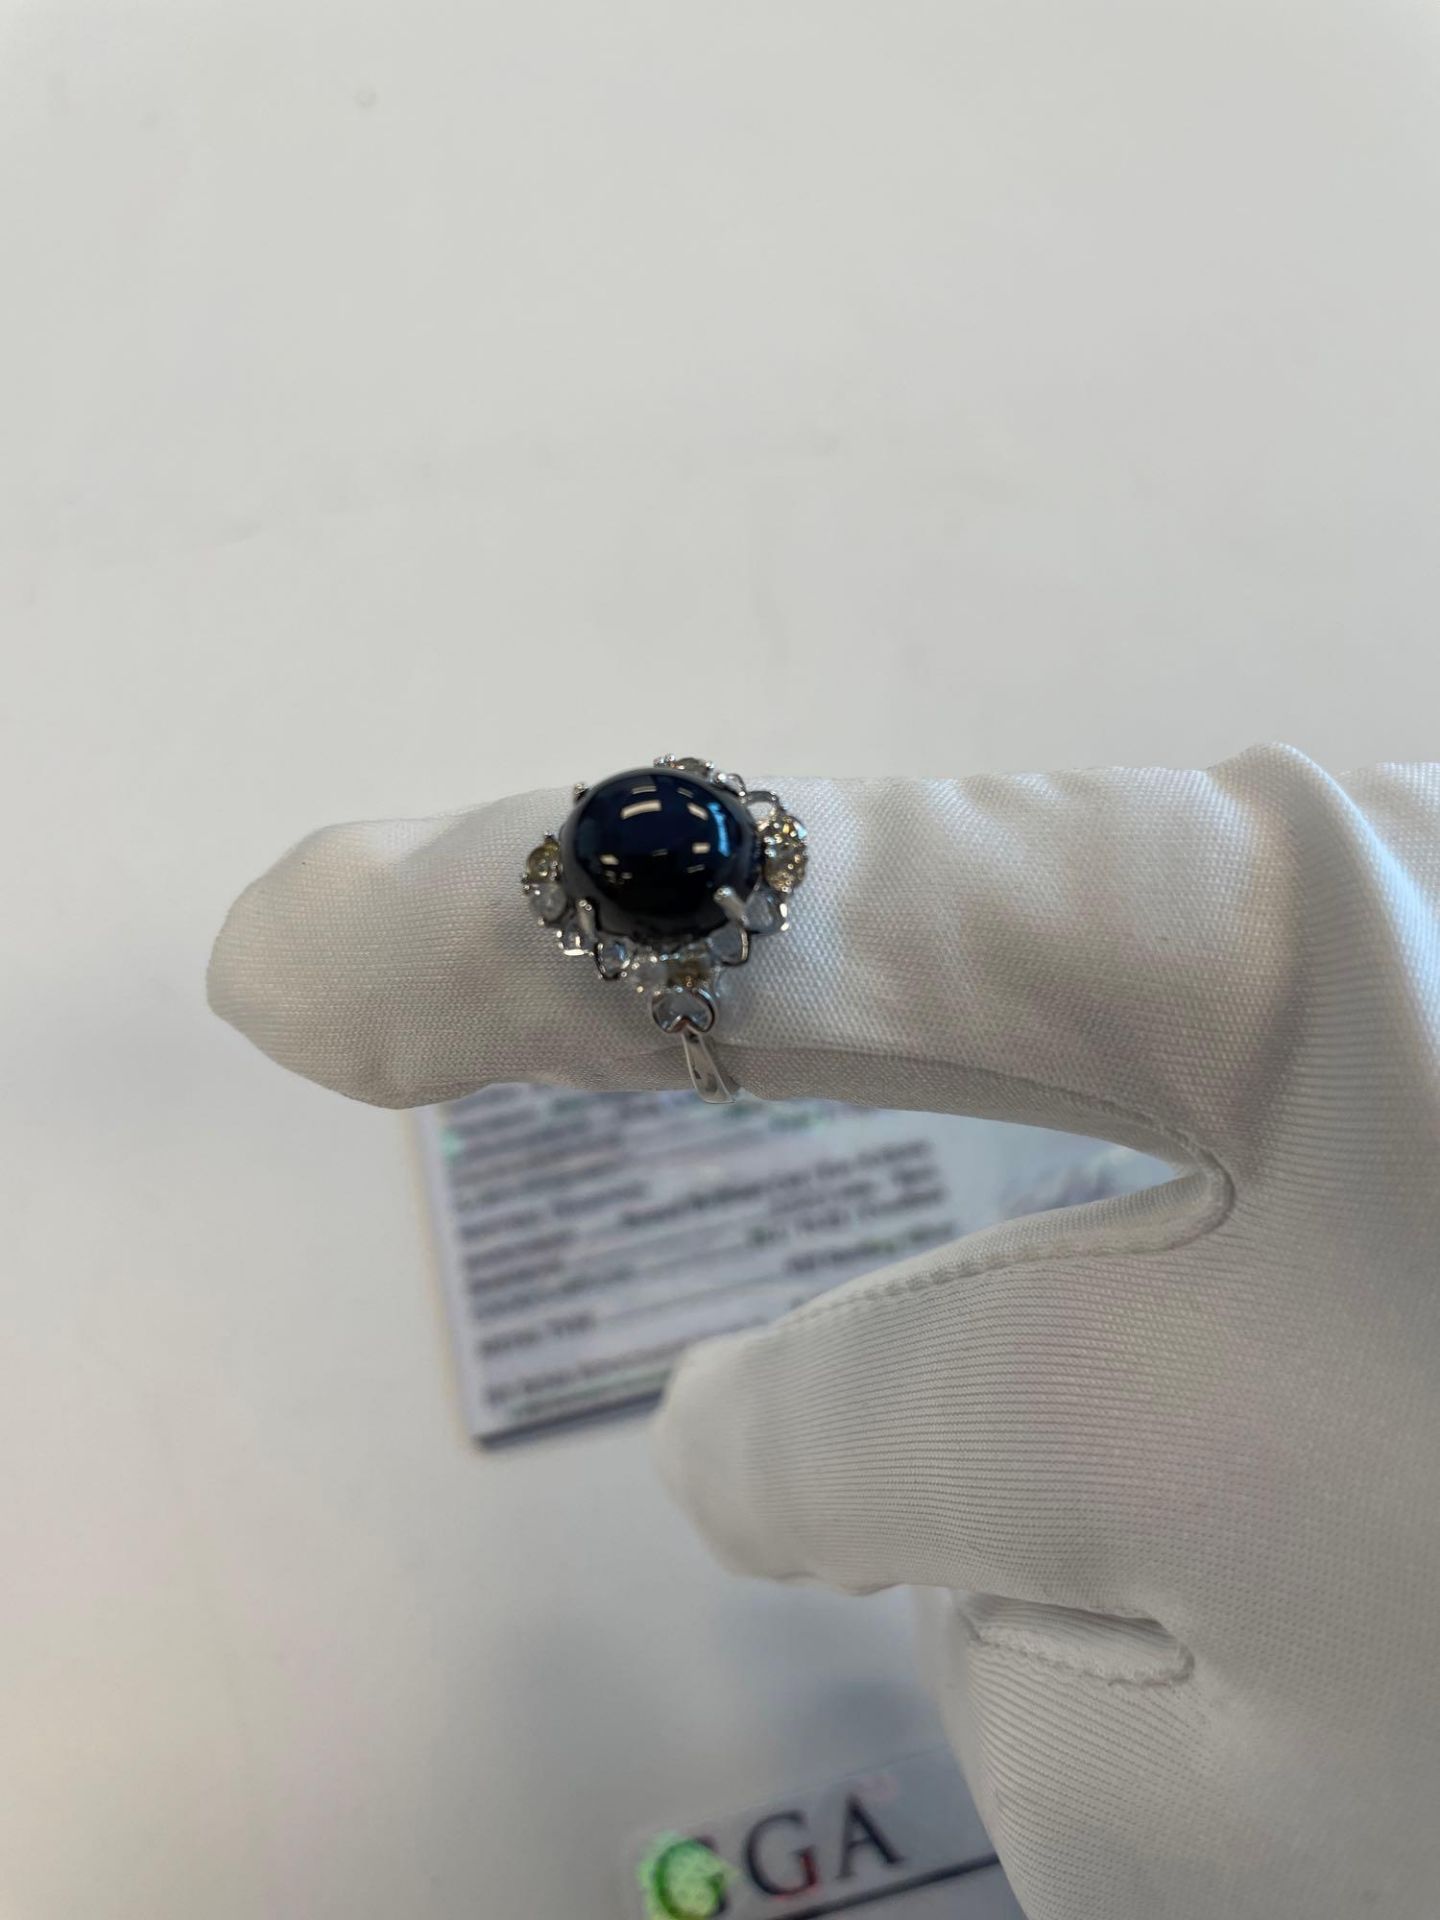 Jewelry; Star Sapphire Corundum ring 6.01 ctw, Star Sapphire Corundum 8.86 ctw ring - Image 5 of 7